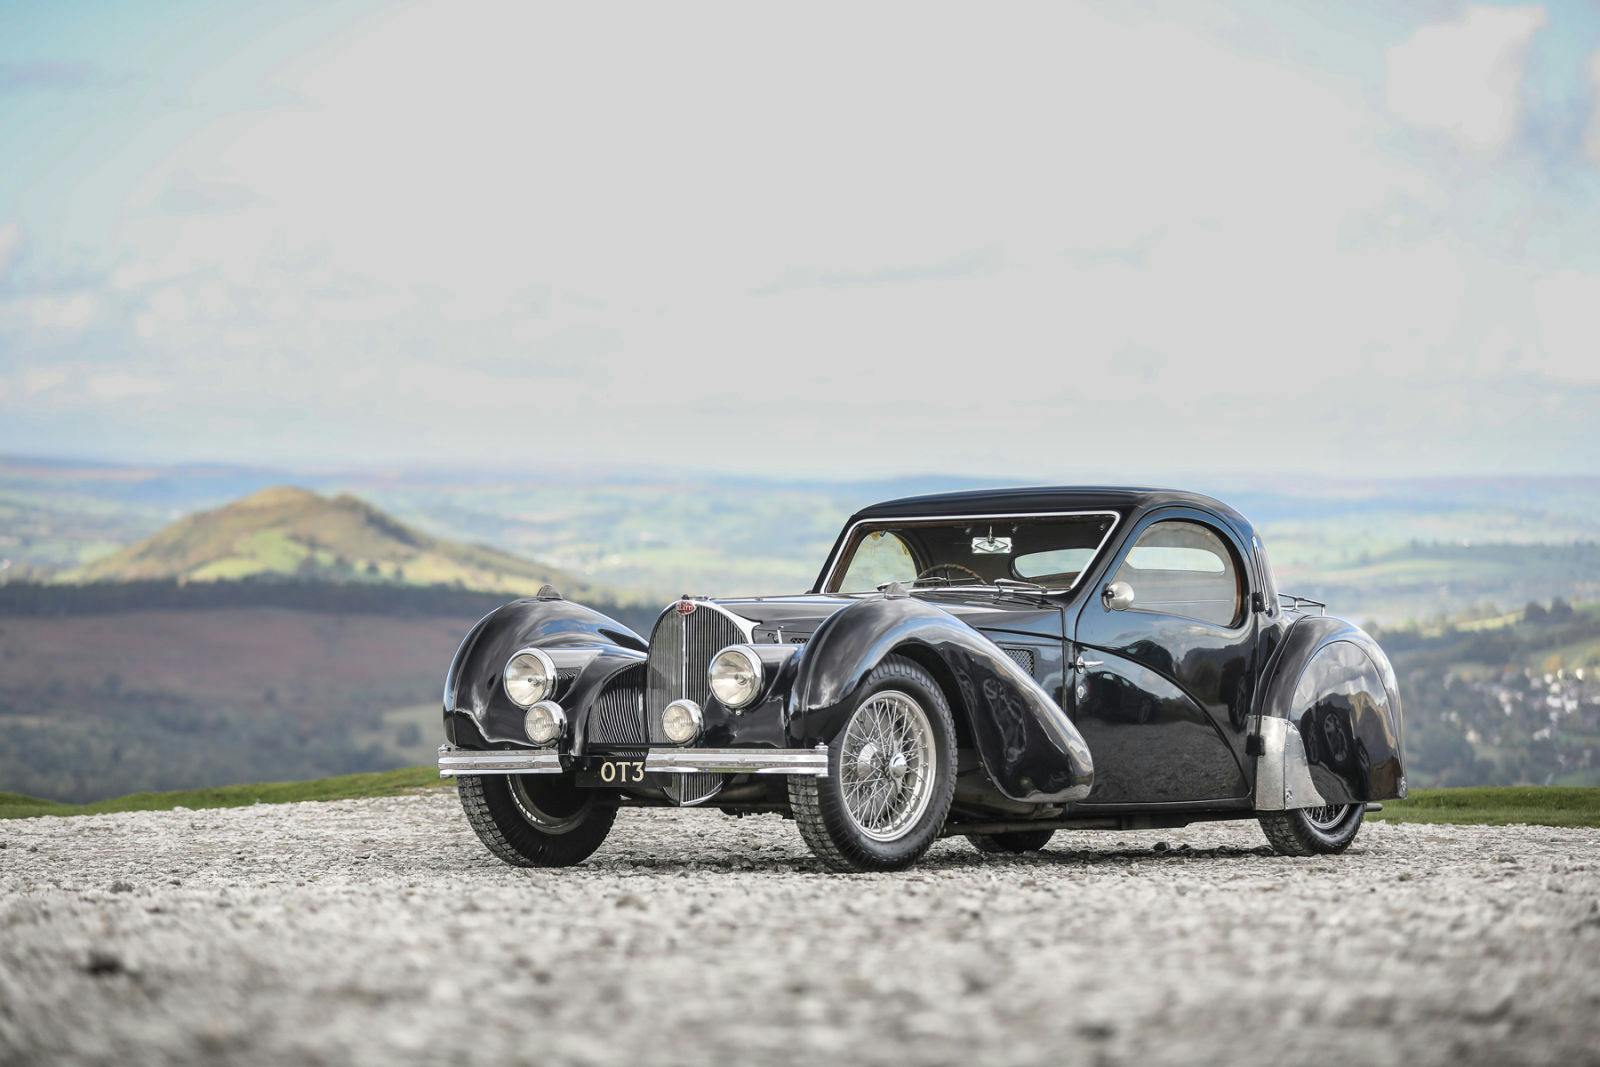 Der Bugatti Type 57S Atalante von 1937 wurde für 10,44 Millionen US-Dollar versteigert.